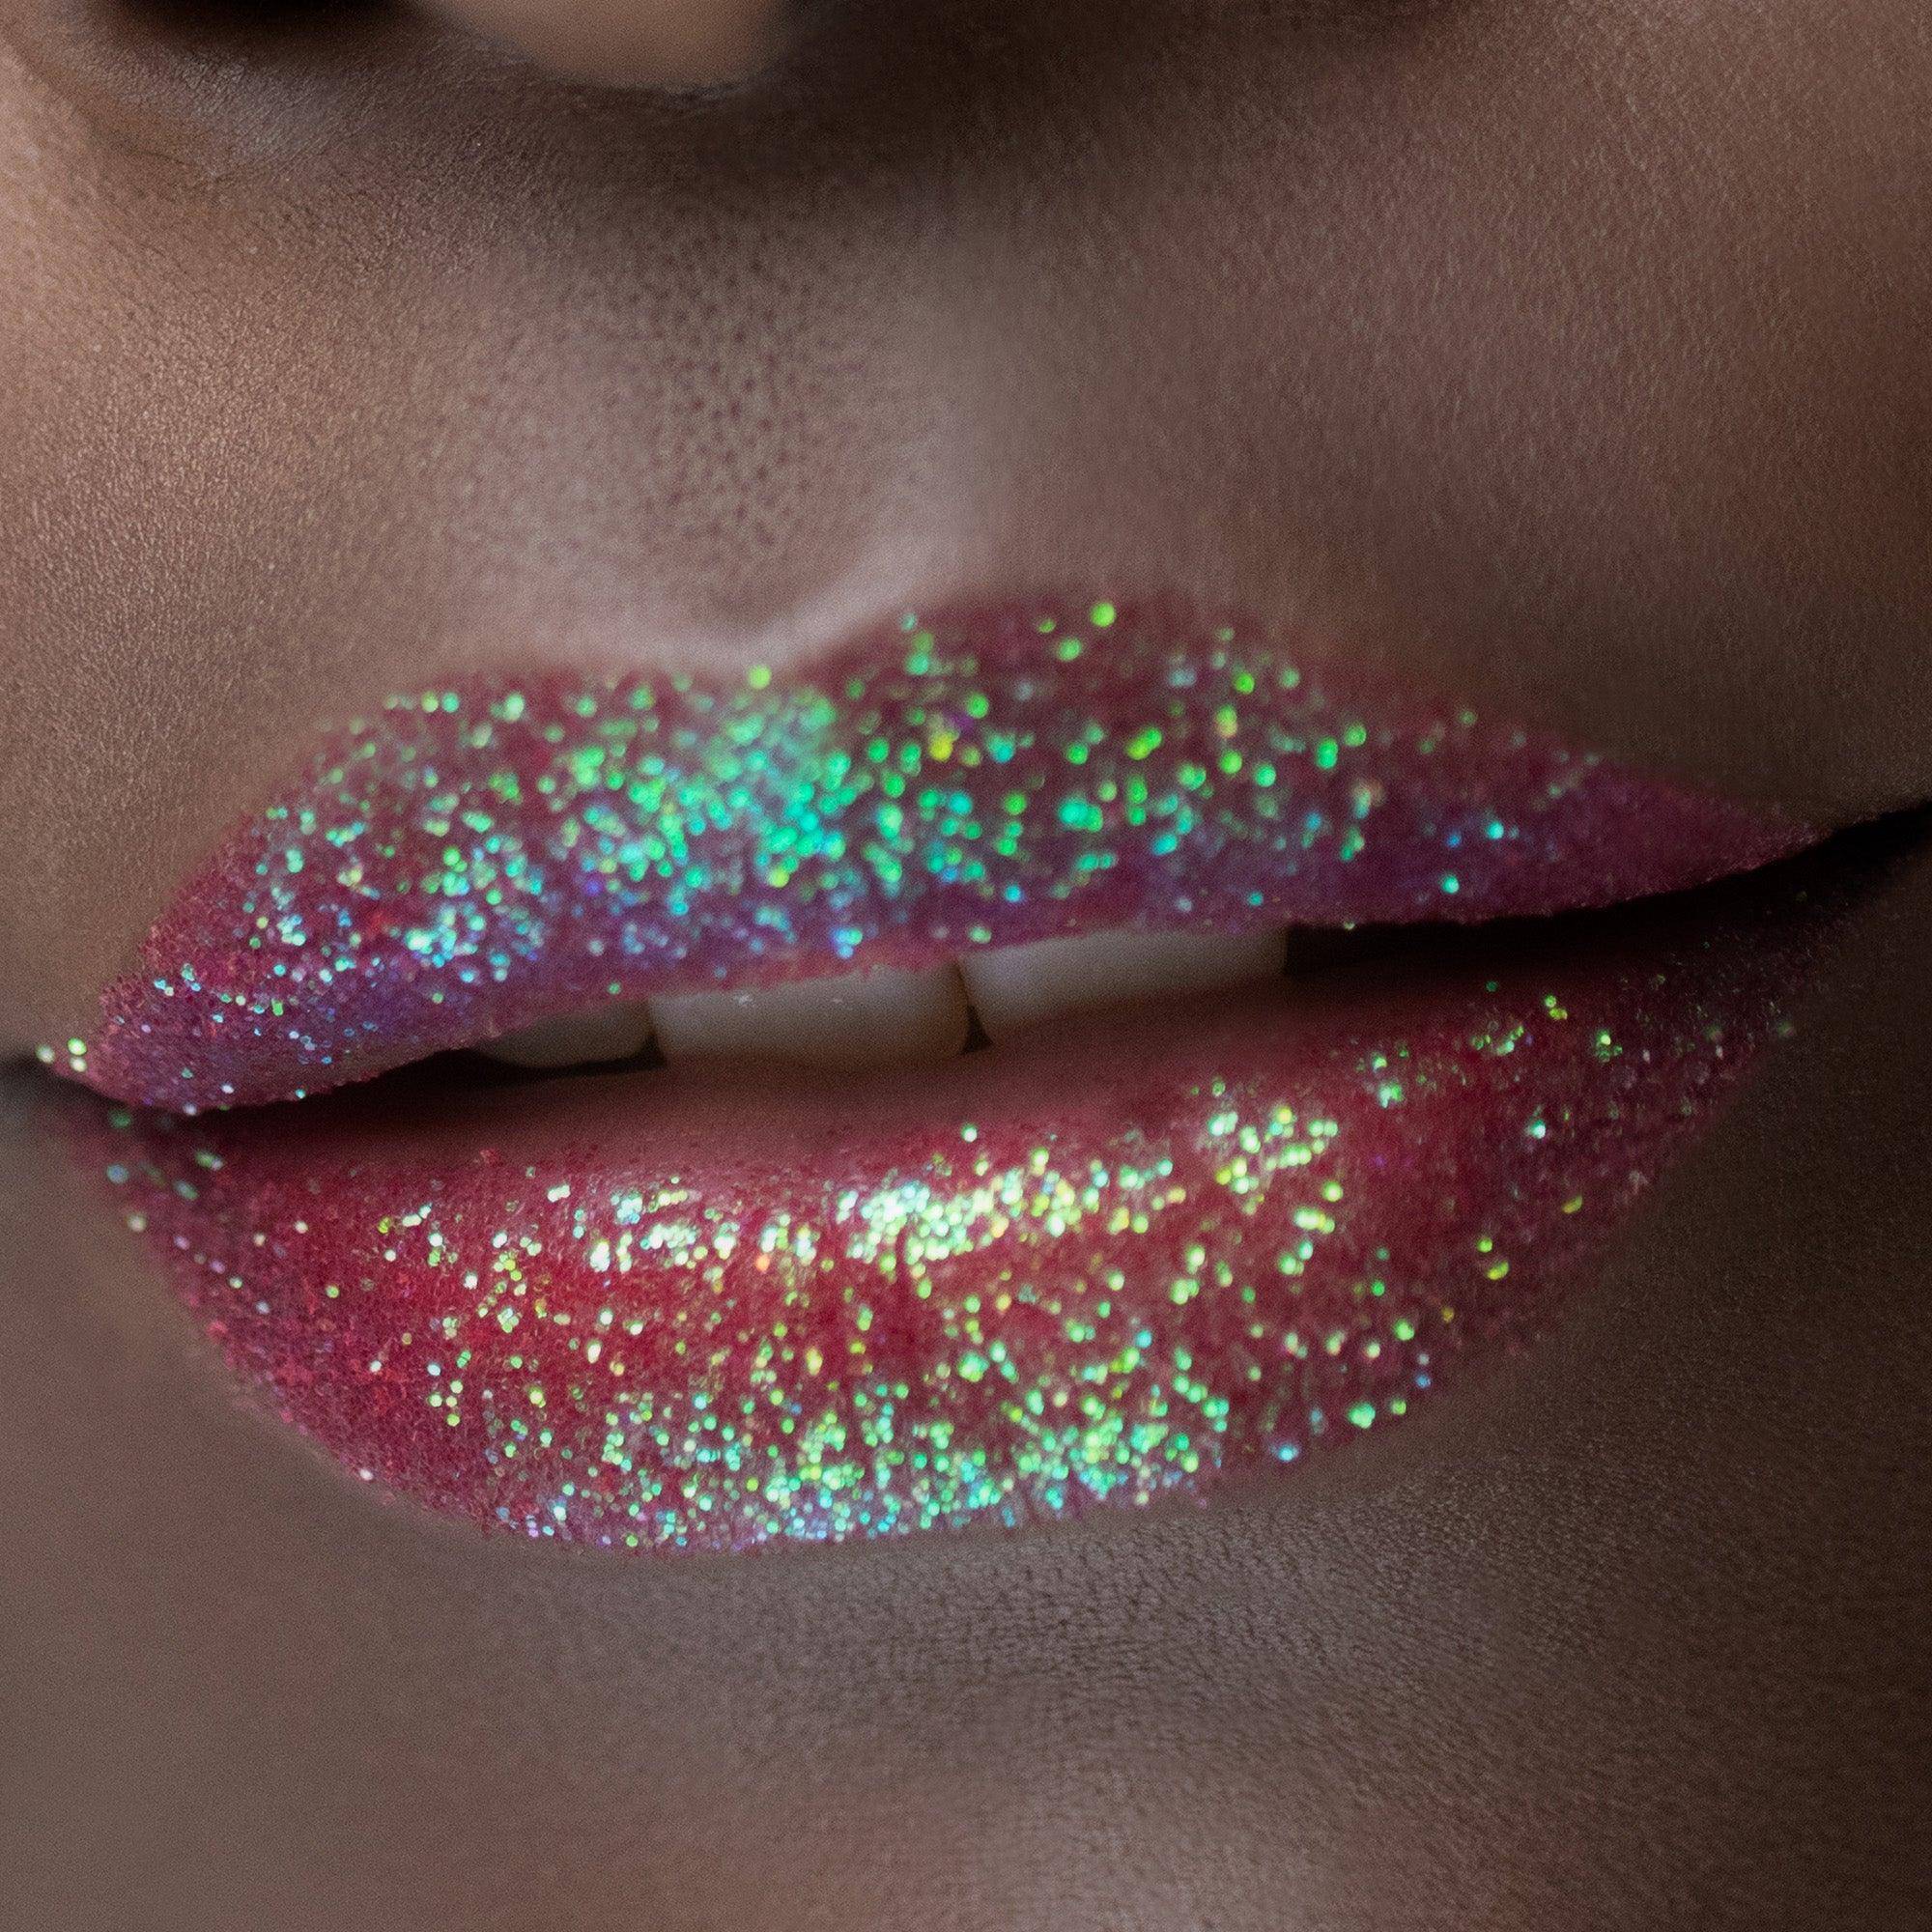 Glitter Lip Kit – Jaysa & Co.